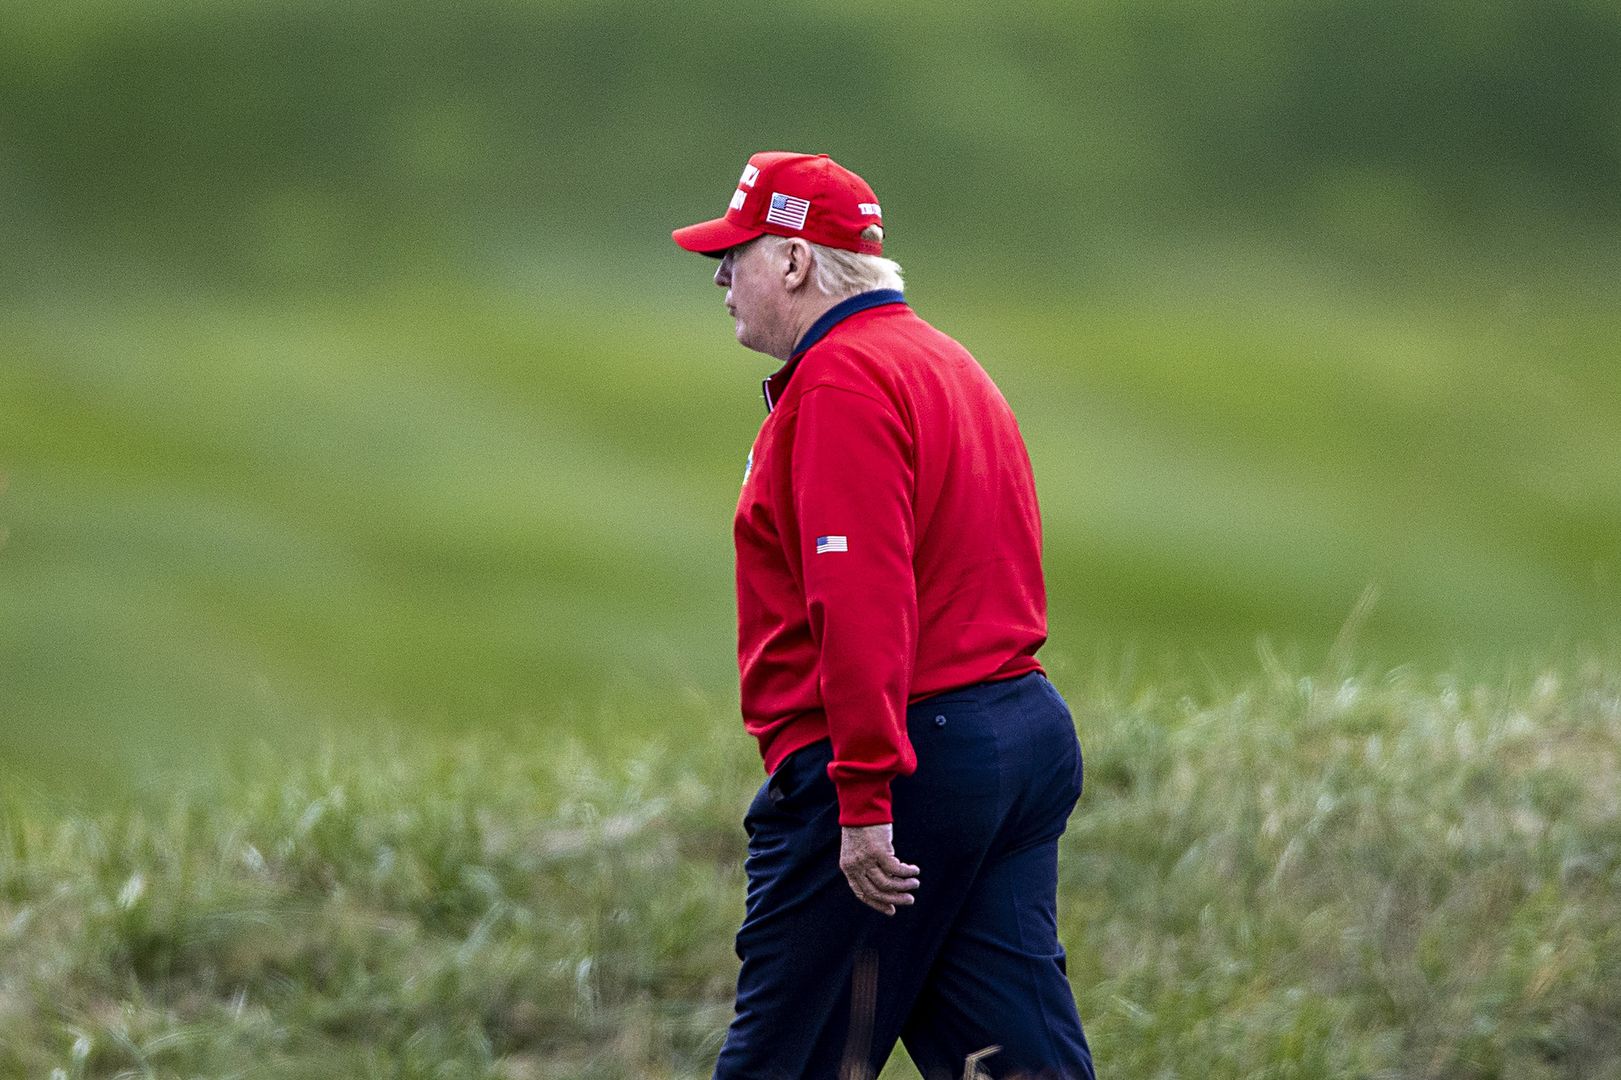 Napisy nad polem golfowym Donalda Trumpa. "Ciepłe przywitanie"